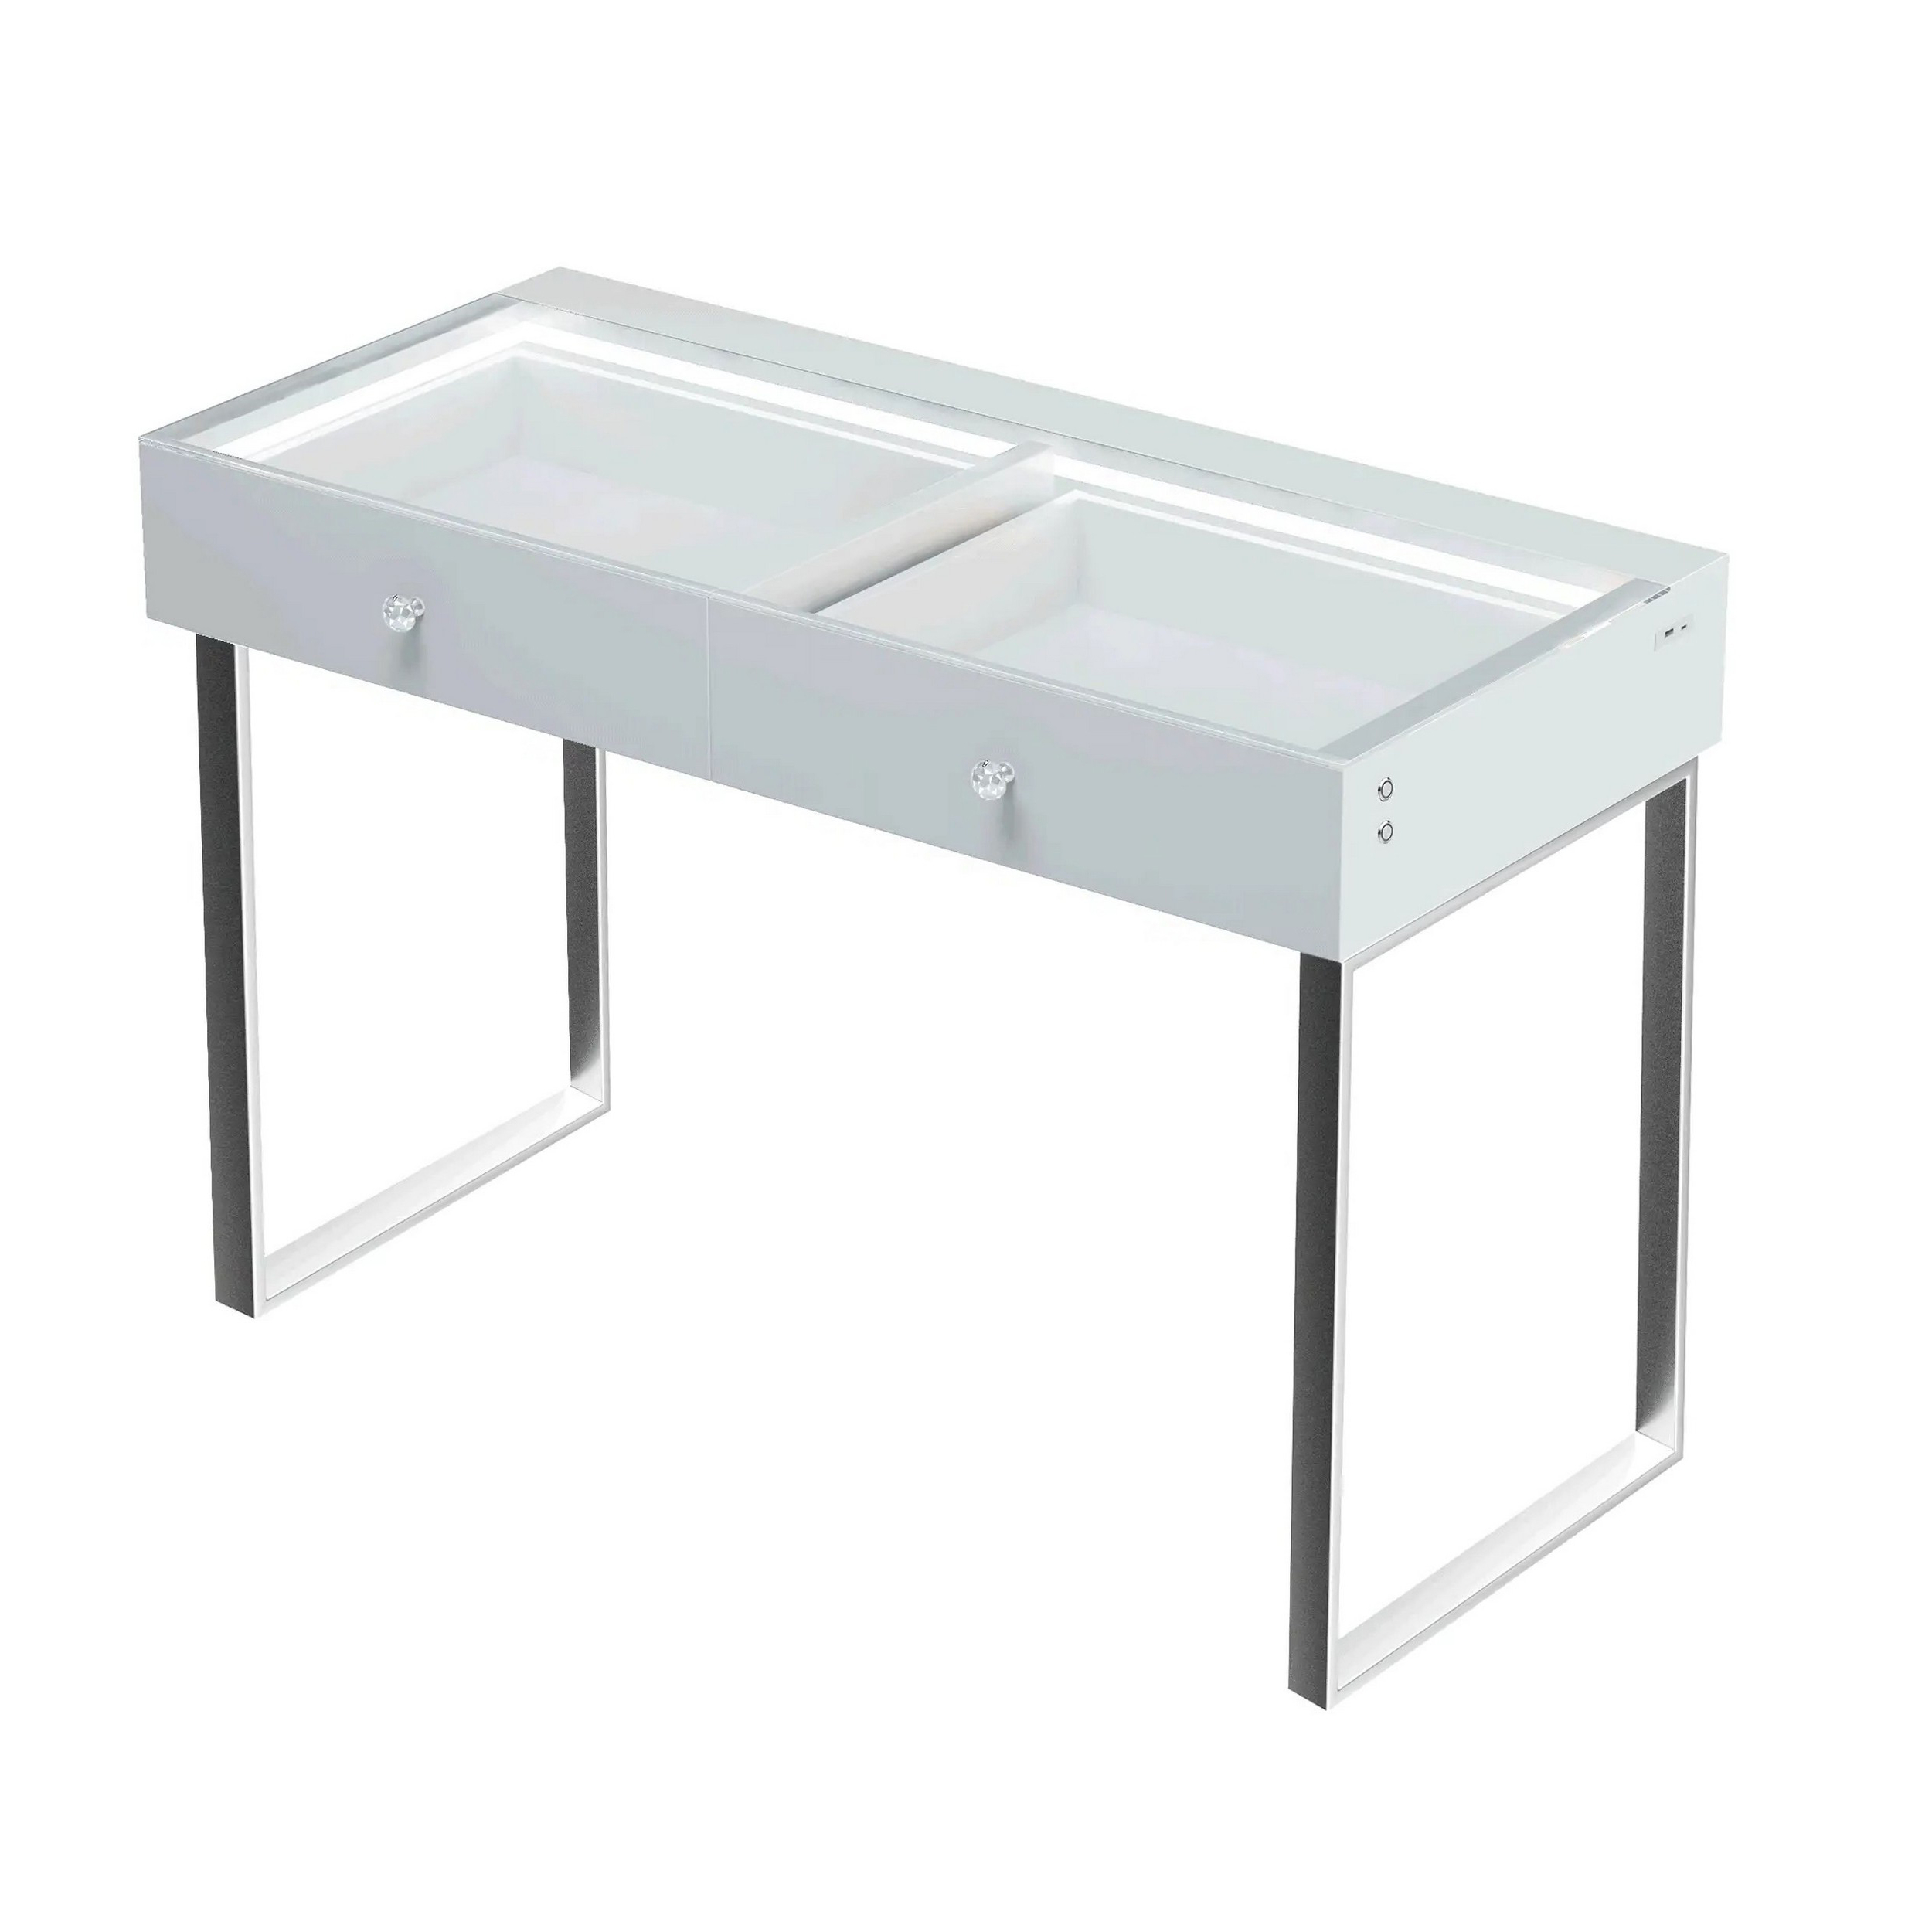 Yli 39 Inch Vanity Desk Pro, 2 Drawers, USB Port, RGB, Glass Tabletop White - Saltoro Sherpi